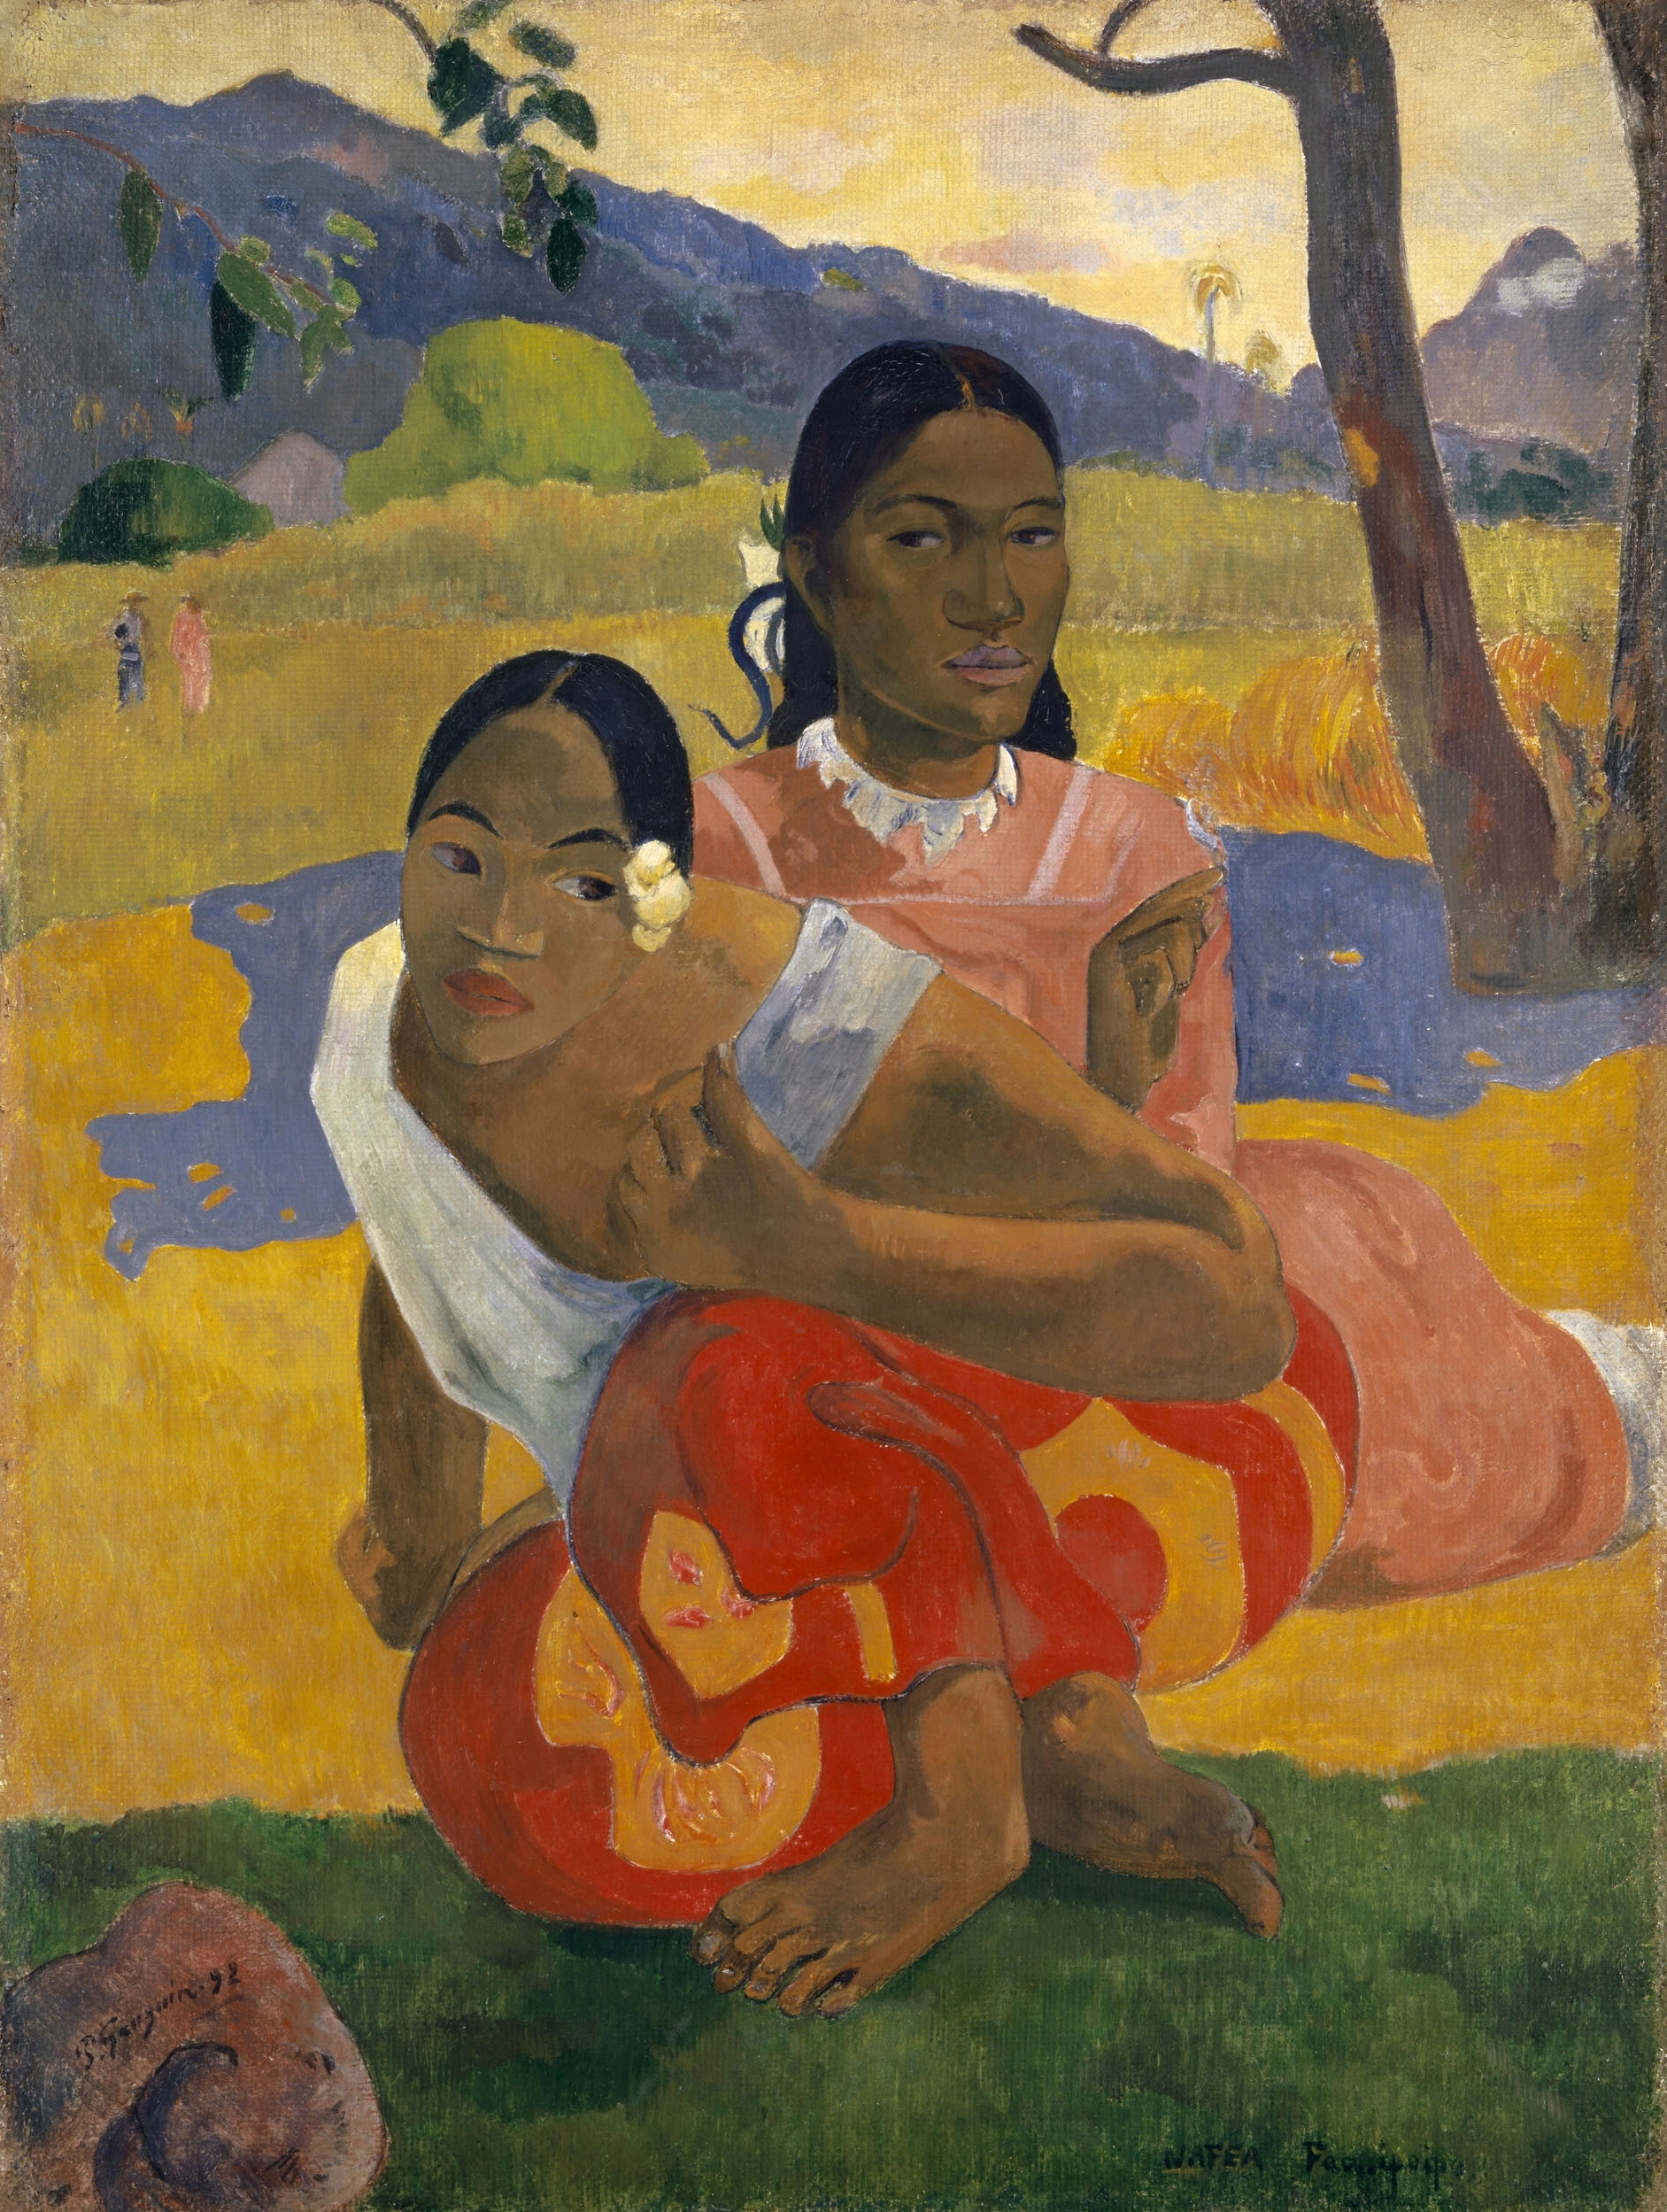 Kiedy Wyjdziesz za Mąż? by Paul Gauguin - 1892 - 101 x 77 cm 